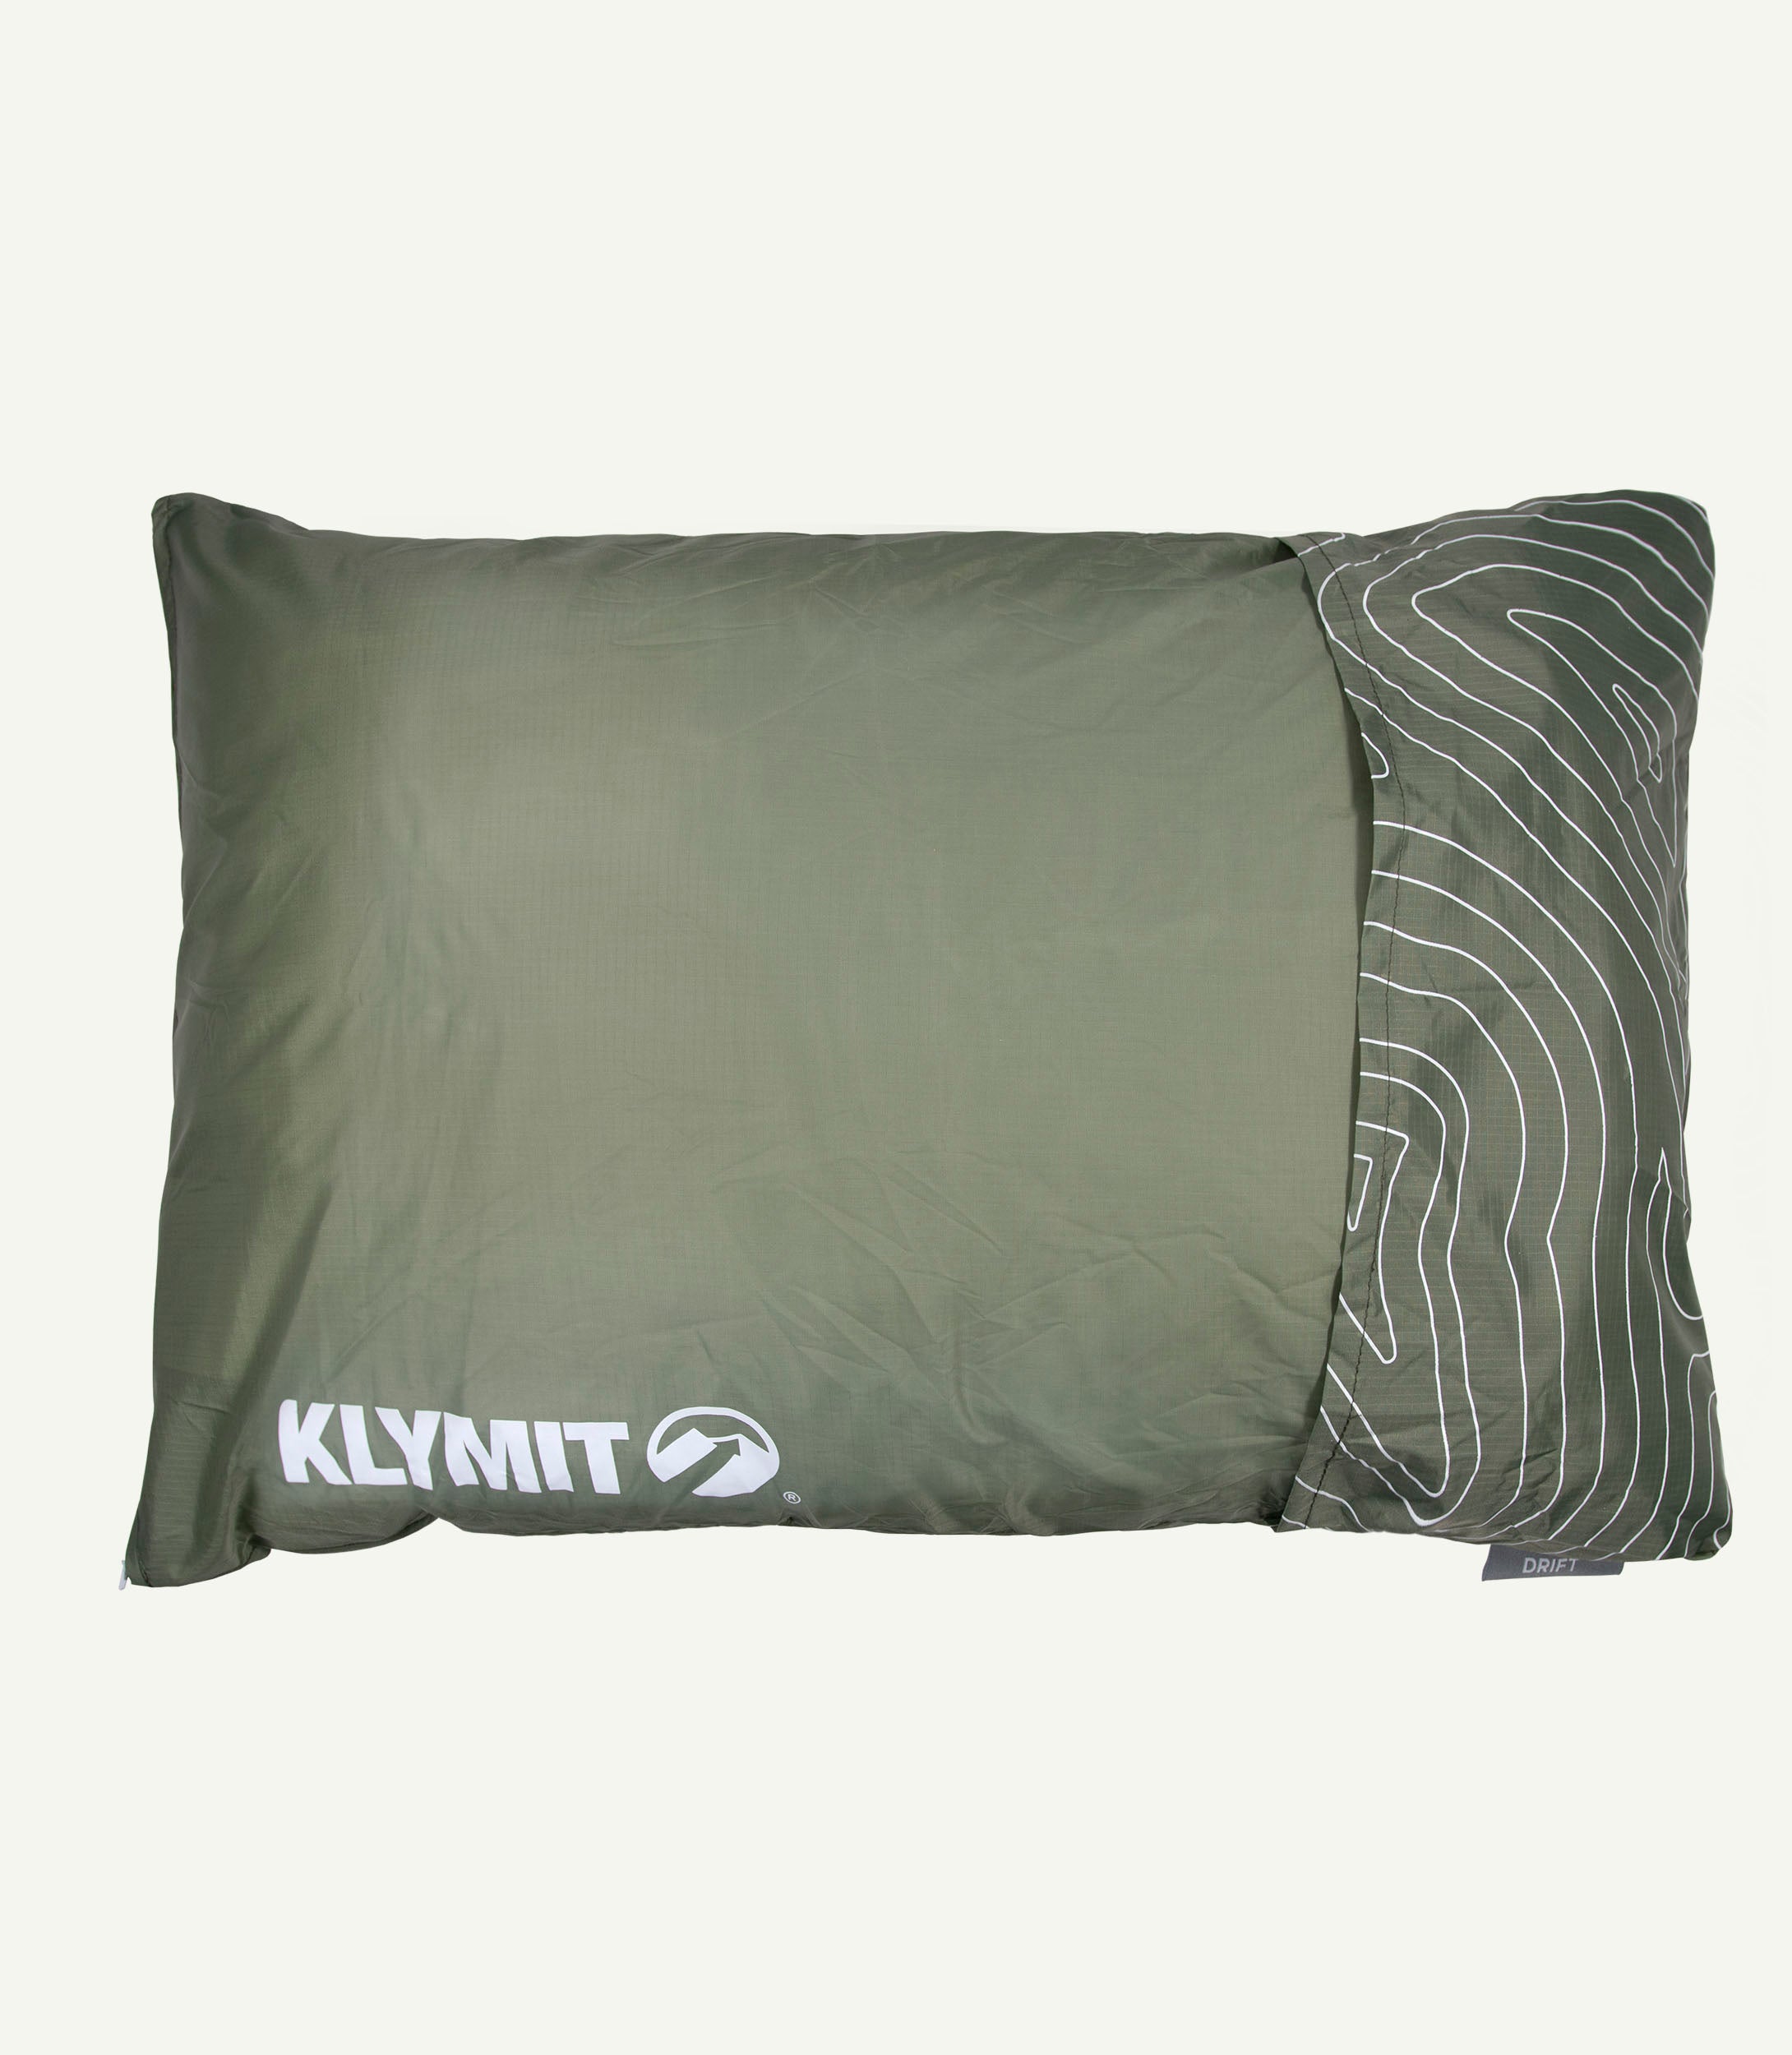 Drift Pillow LARGE Green